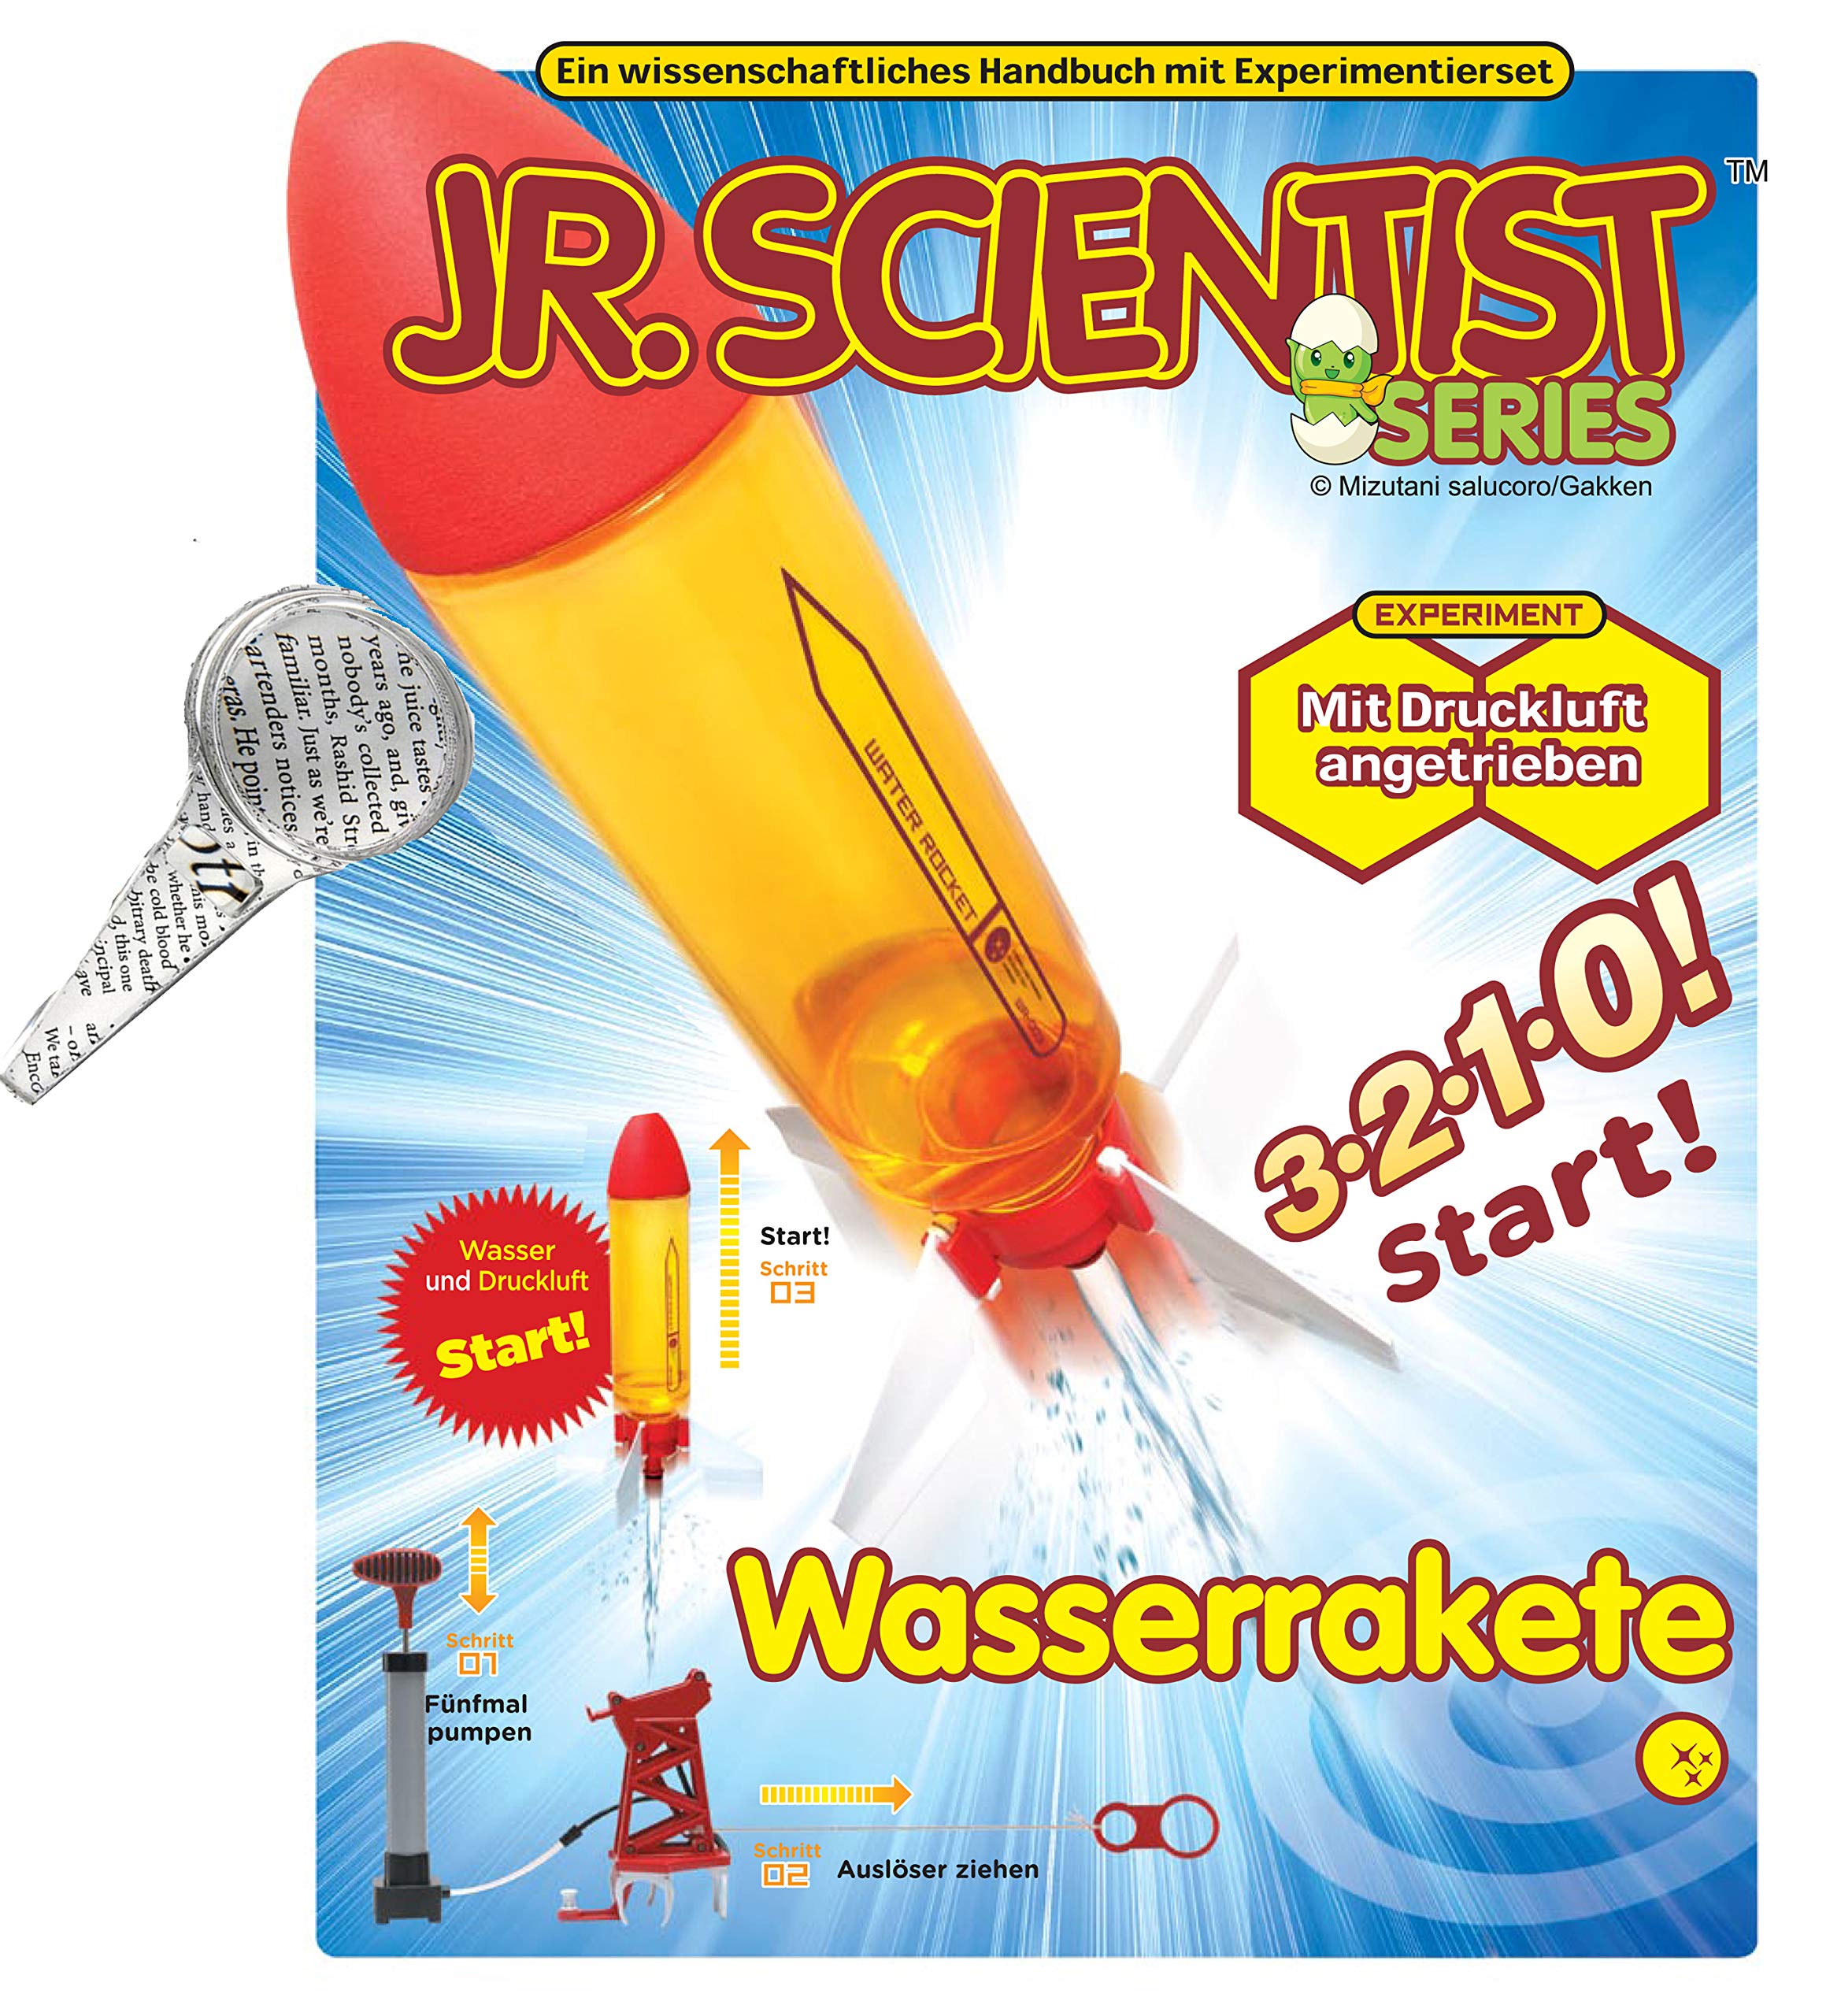 Wasserrakete Water Rocket Bausatz mit Lehrbuch in Deutscher und englischer Sprache und Technikerhandlupe 2+5fache Vergrößerung